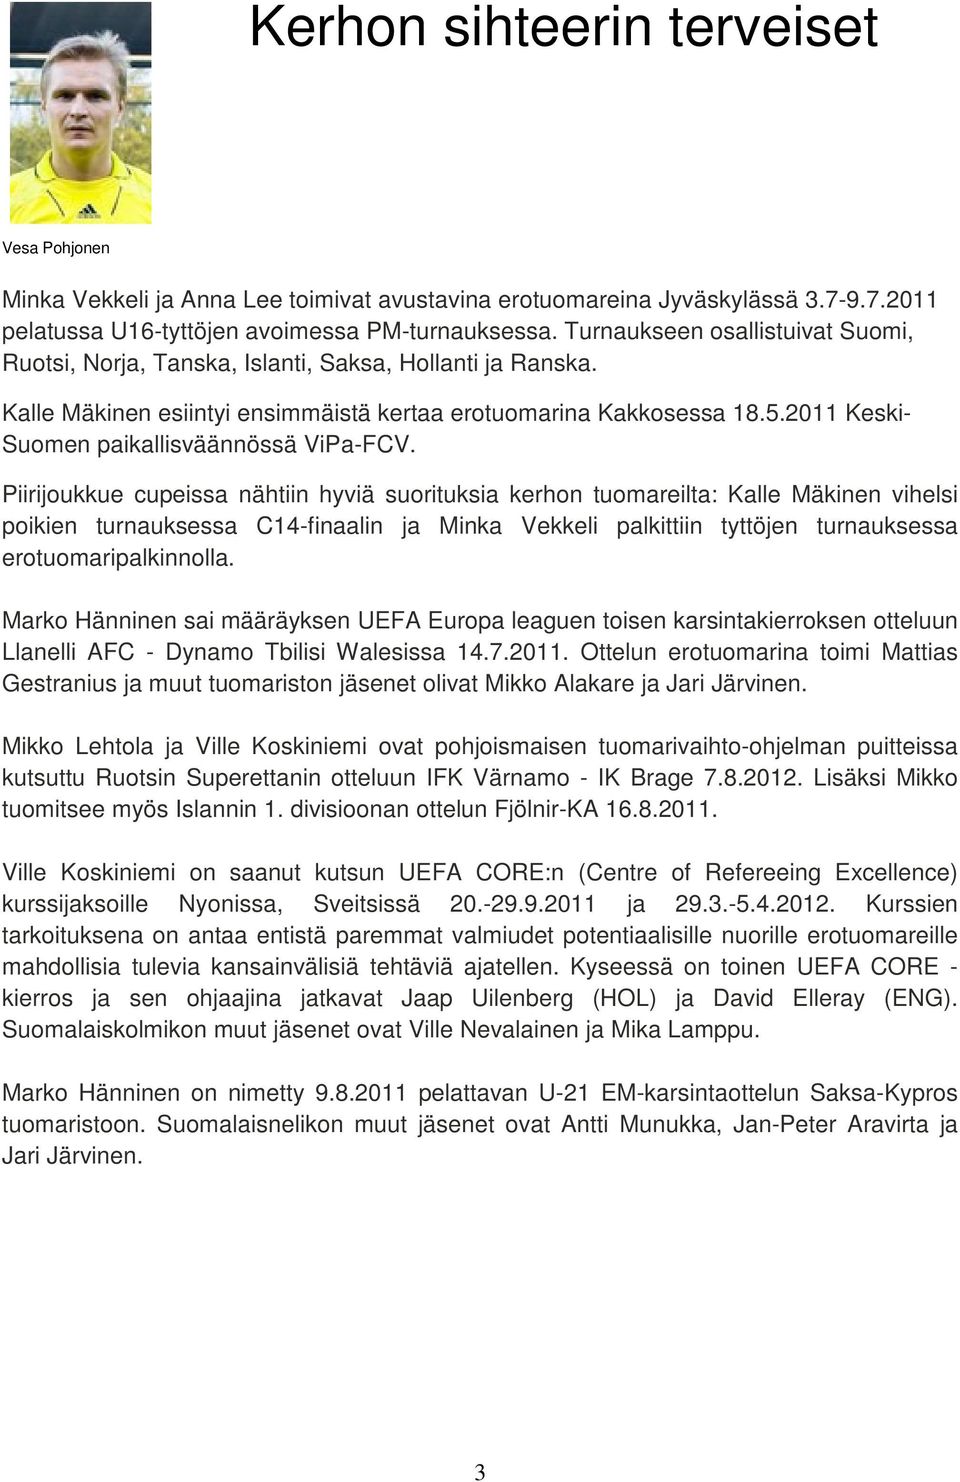 2011 Keski- Suomen paikallisväännössä ViPa-FCV.